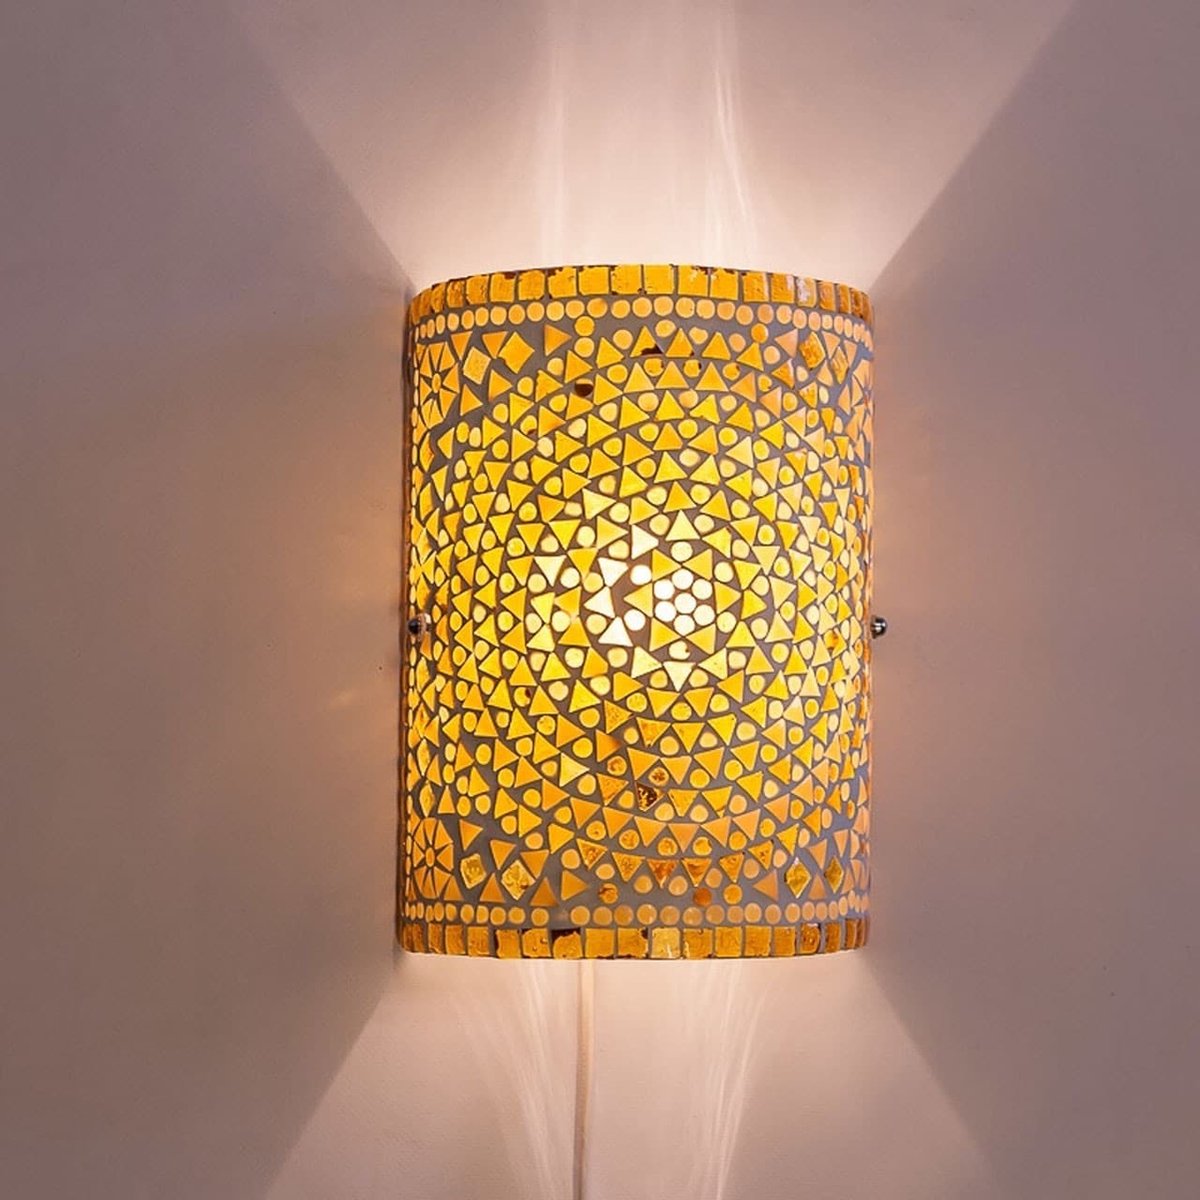 Oosterse mozaïek cilinder wandlamp | 26 cm | glas / metaal | beige / bruin | woonkamer lamp | traditioneel / landelijk design